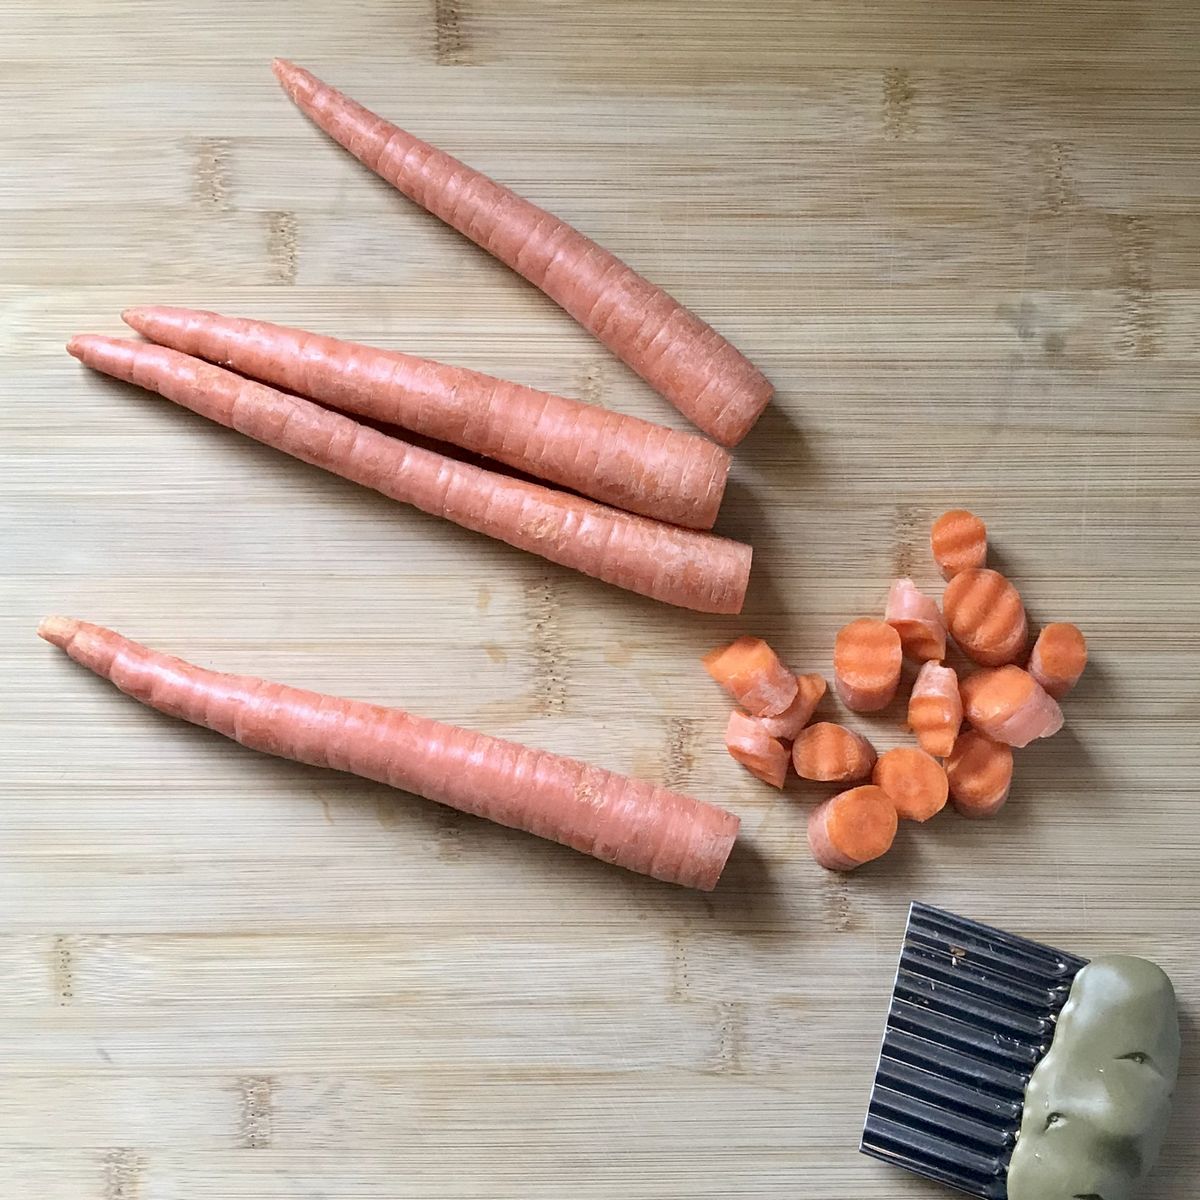 Crinkle cut carrots on a wooden board.